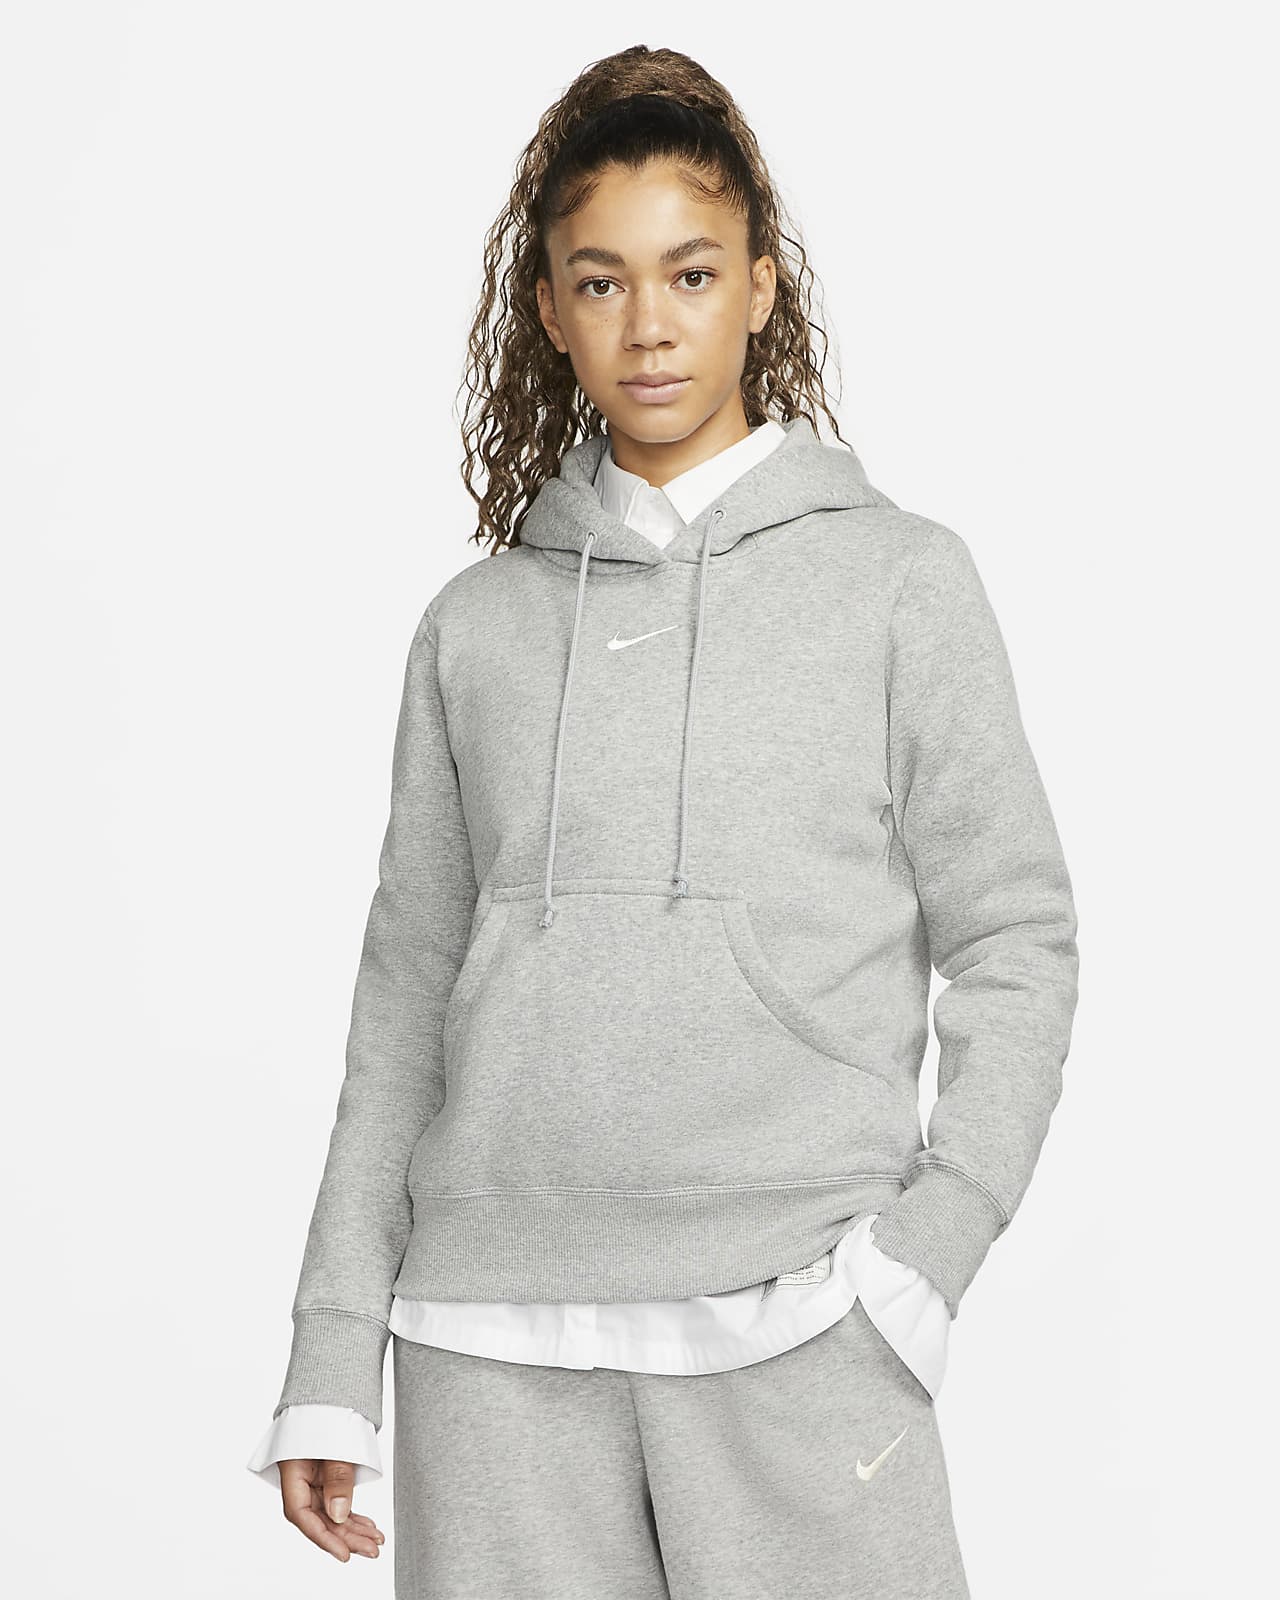 Nike Women's Vintage Y2K Gray Sweatshirt Hoodie Size Small